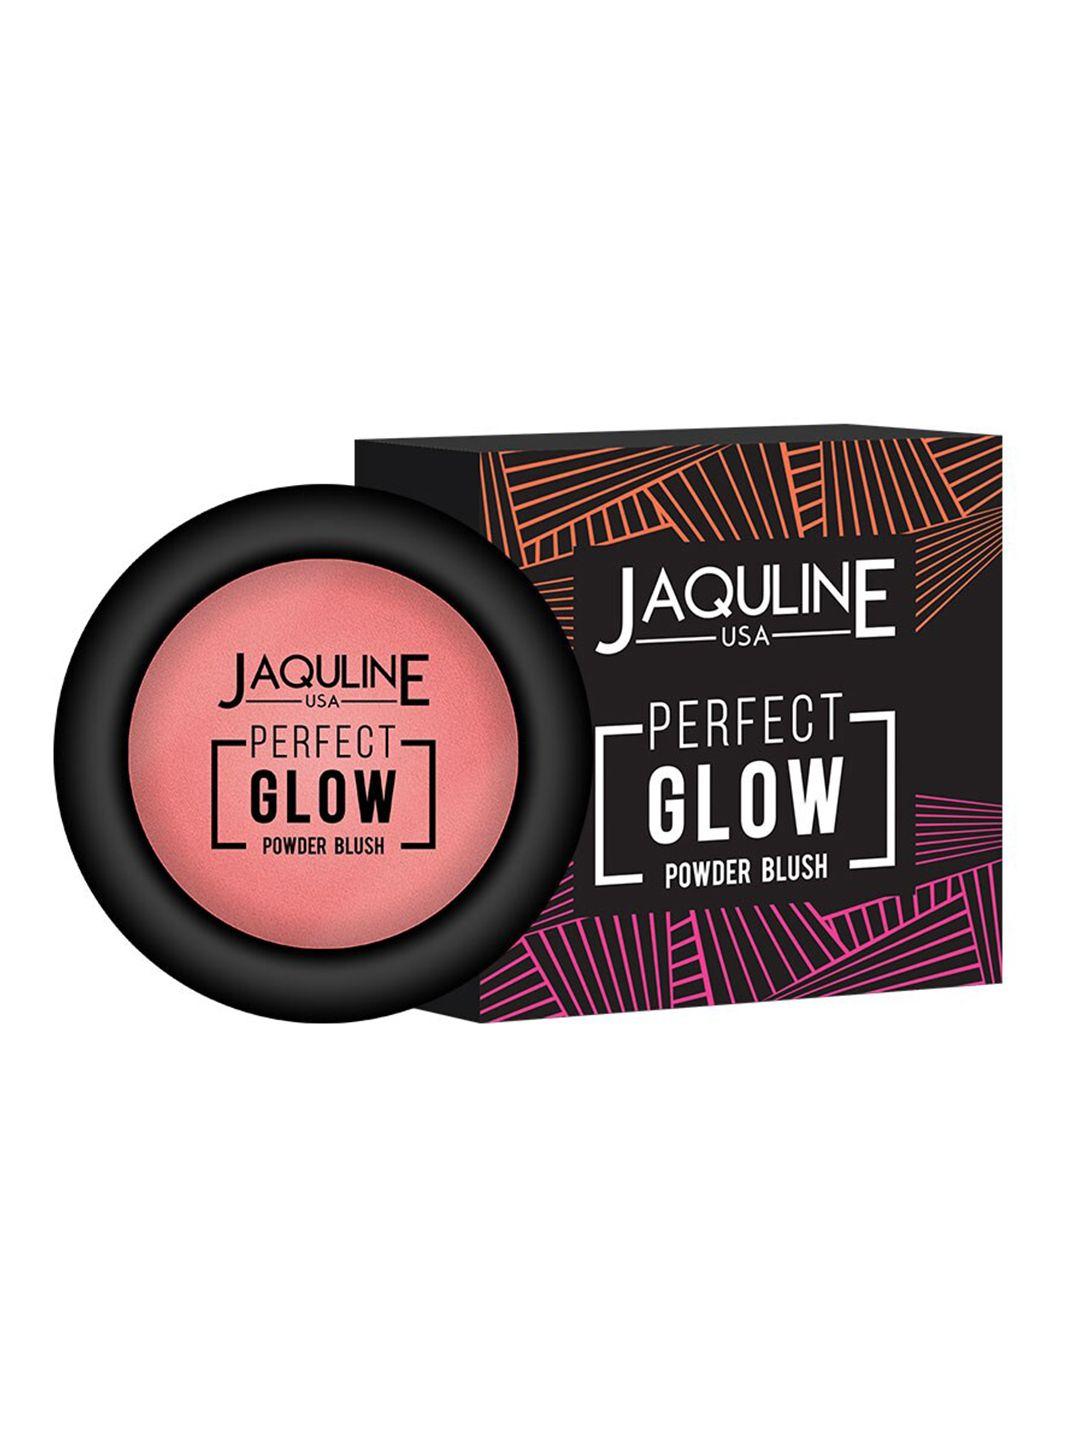 jaquline usa perfect glow blush 5gm - sunset hue 03